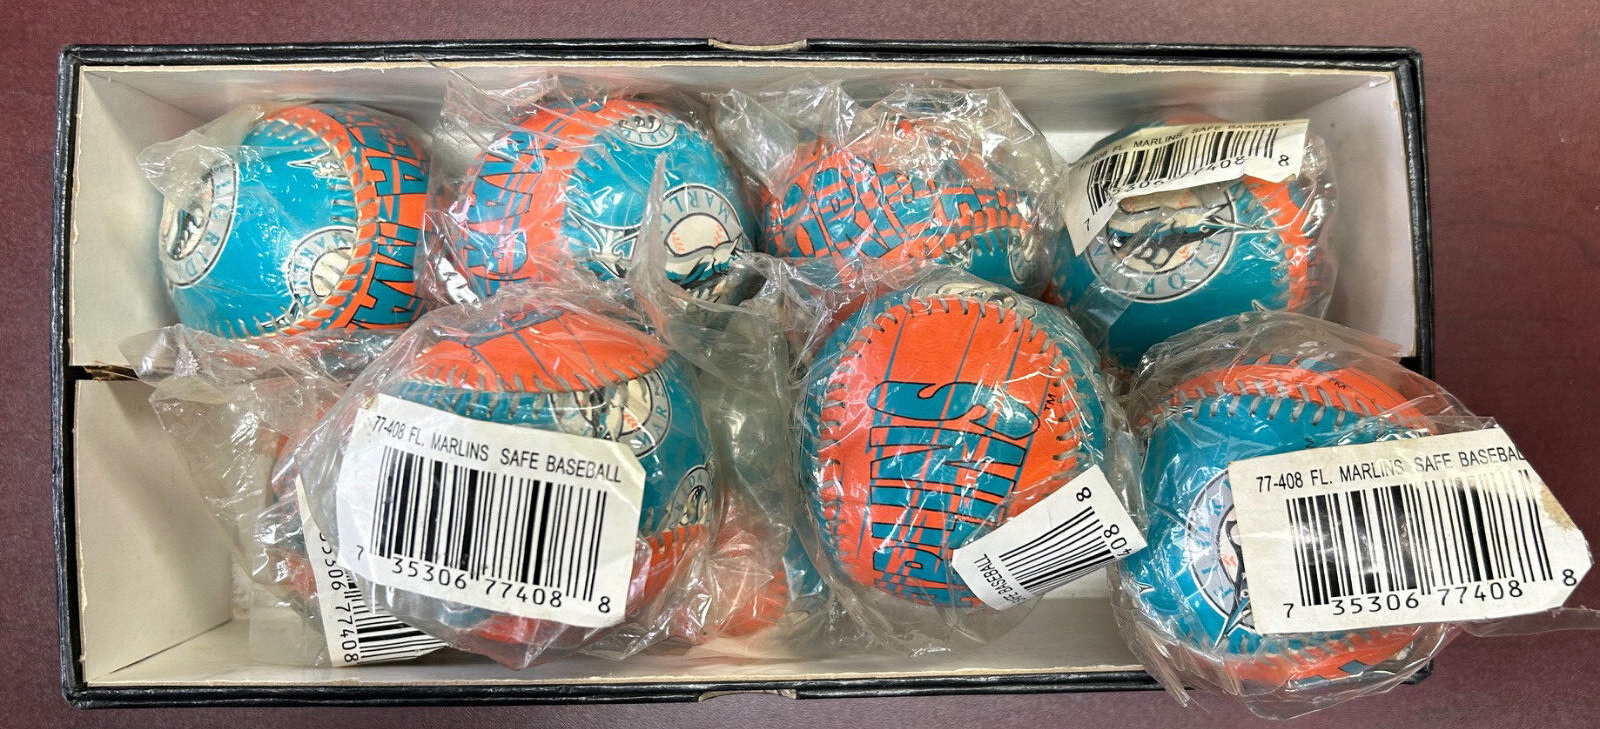 (9) Florida Marlins Baseball Logo Balls - new in sealed bags